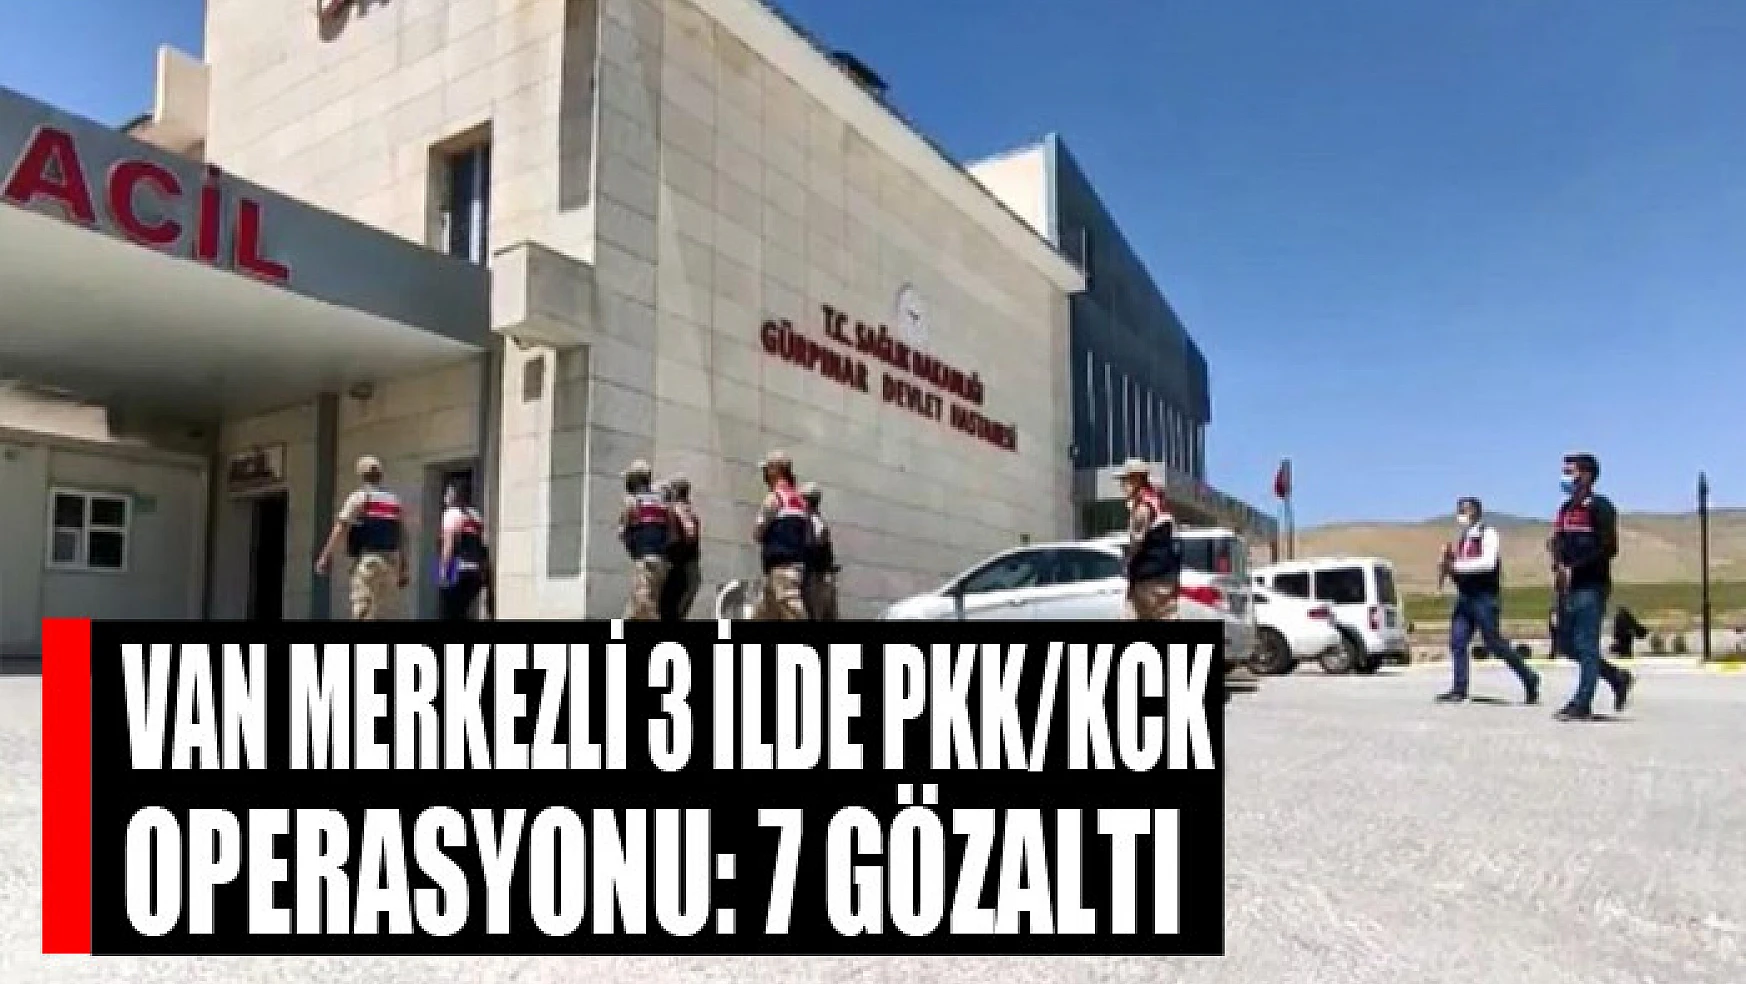 Van merkezli 3 ilde PKK/KCK operasyonu: 7 gözaltı